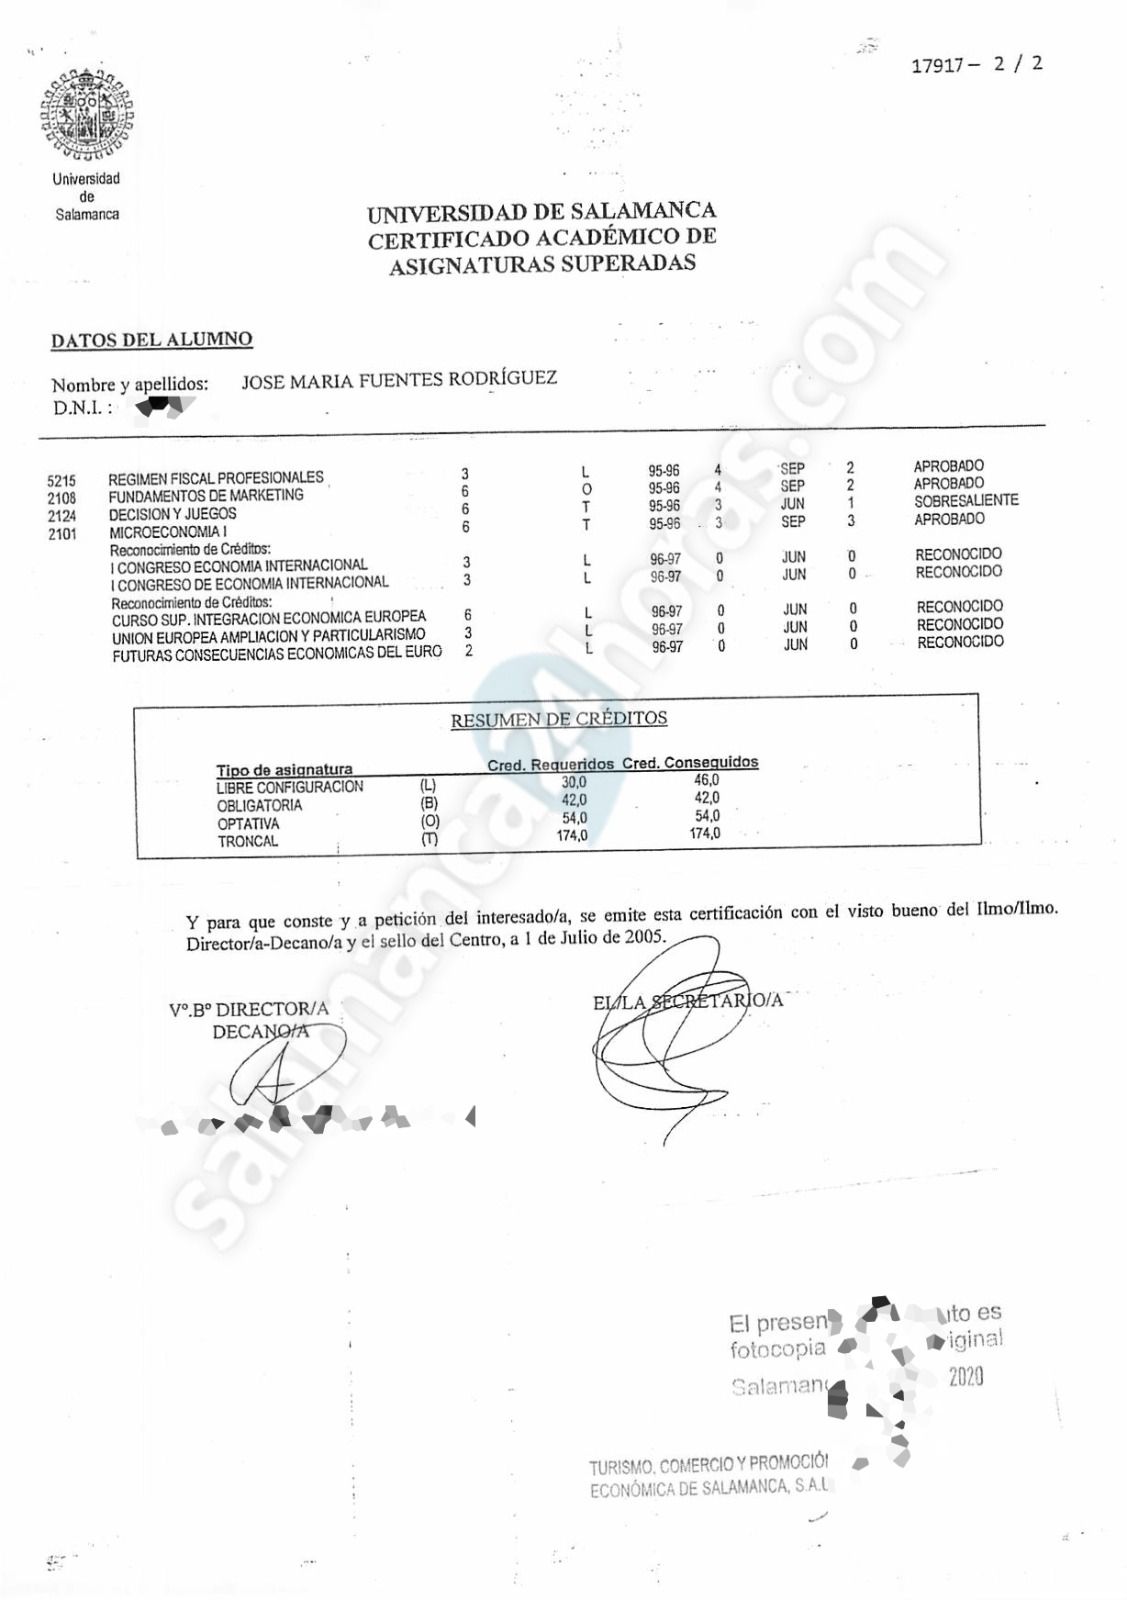 Informe falsificado presentado como notas de José María Fuentes 3